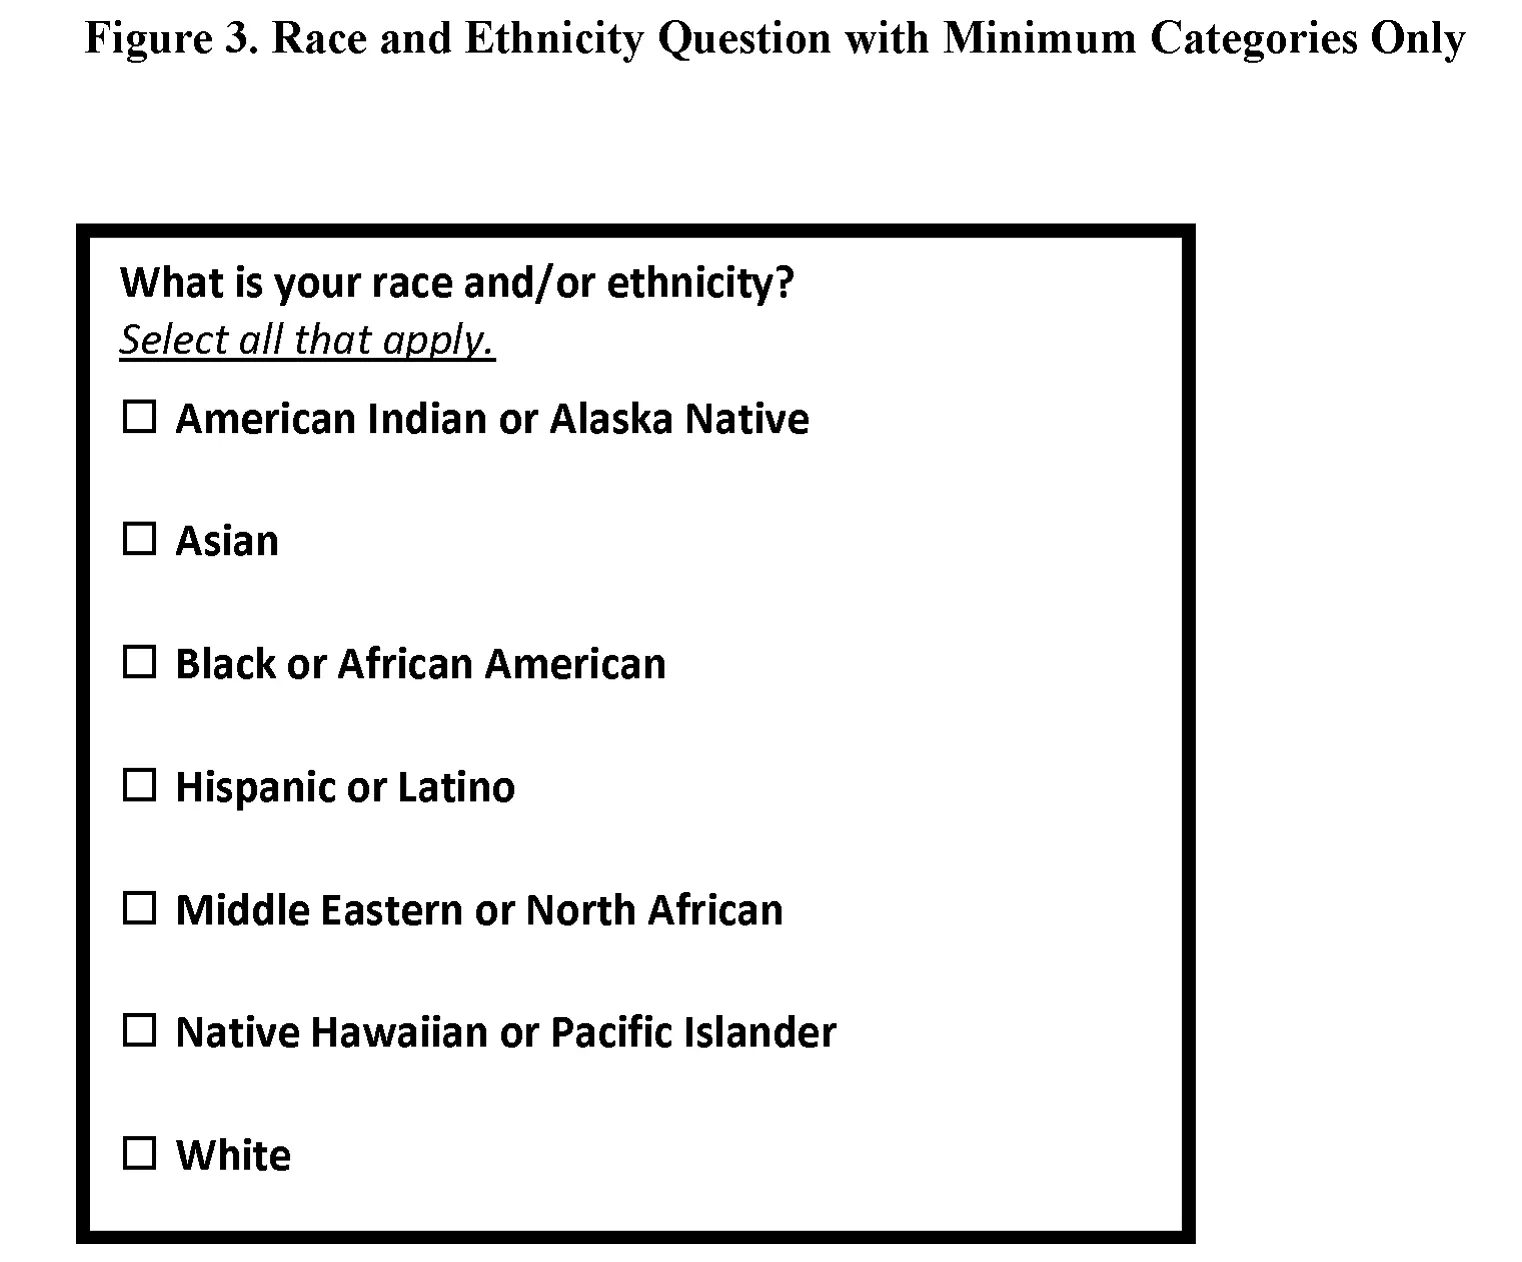 لقطة شاشة لسؤال العرق والإثنية مع فئات متعددة، بما في ذلك الشرق الأوسط أو شمال إفريقيا